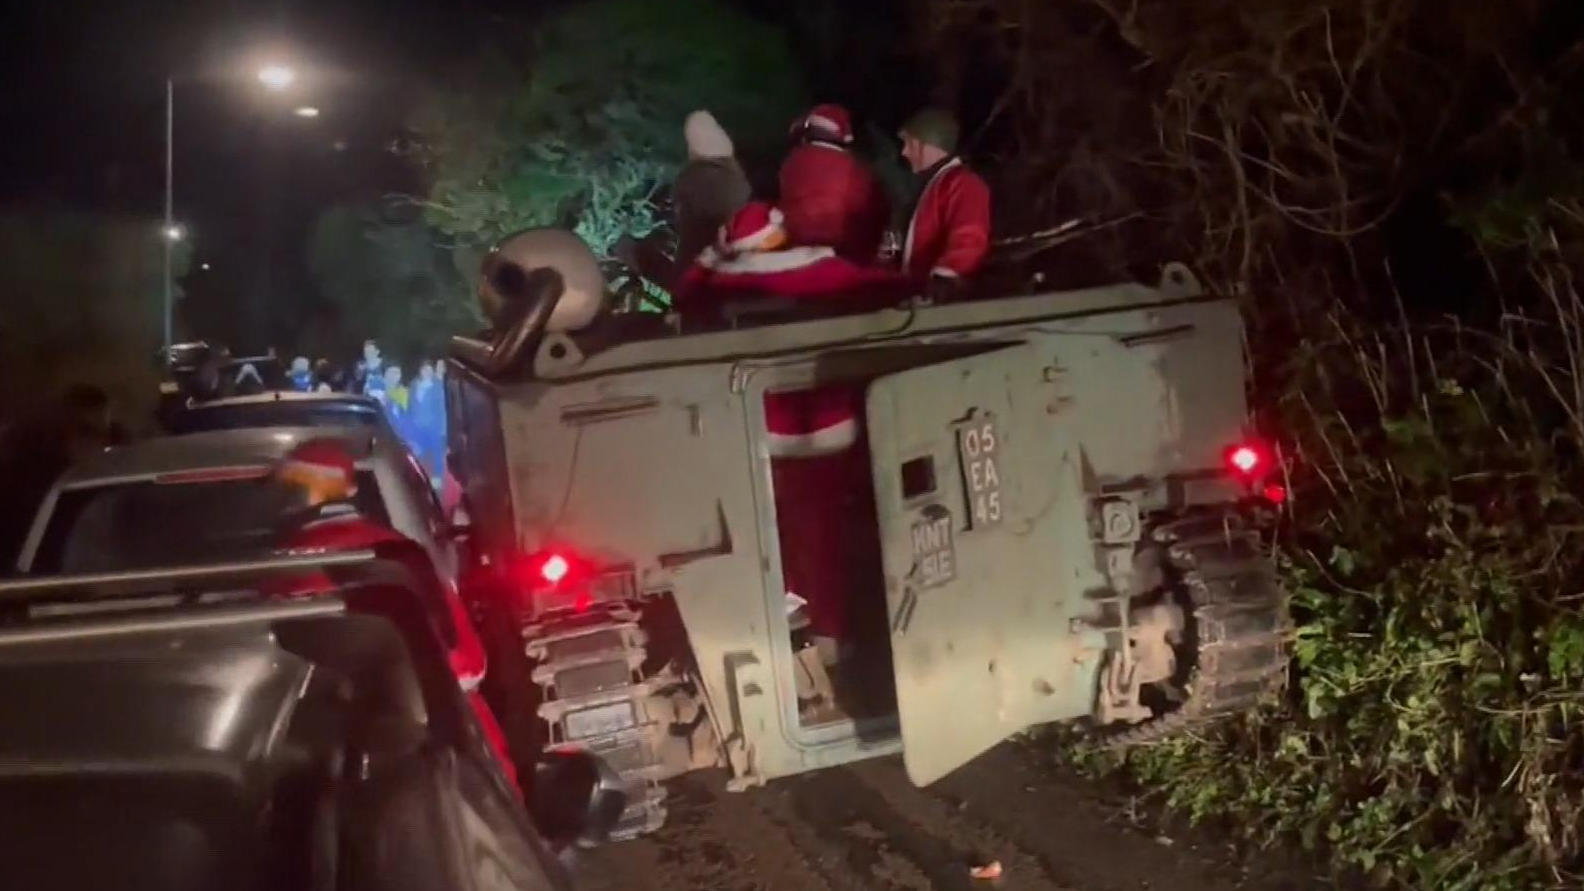 Betrunkene Weihnachtsmänner fahren mit Panzer durch Dorf Panzerkette statt Lichterkette